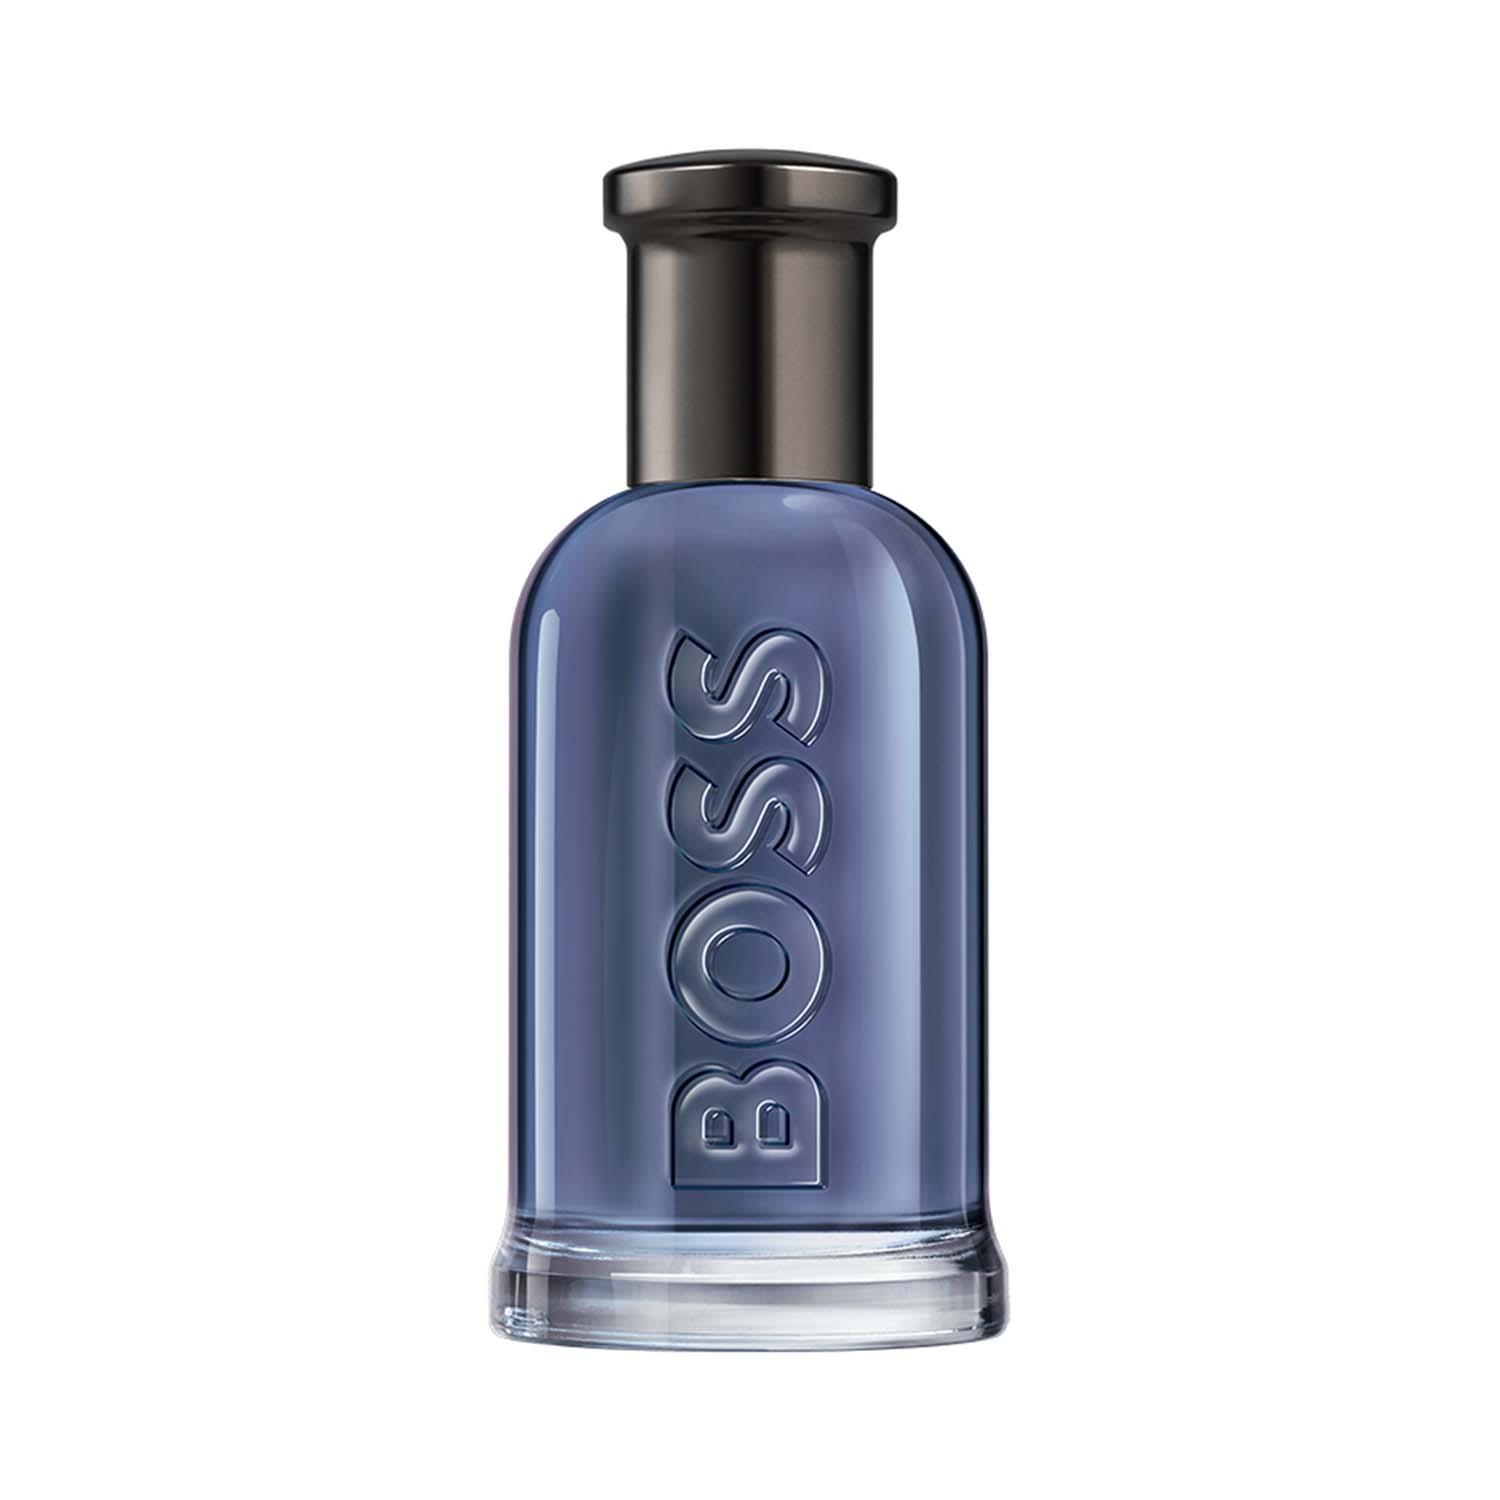 Boss | Boss Bottled Infinite Eau De Parfum (50ml)